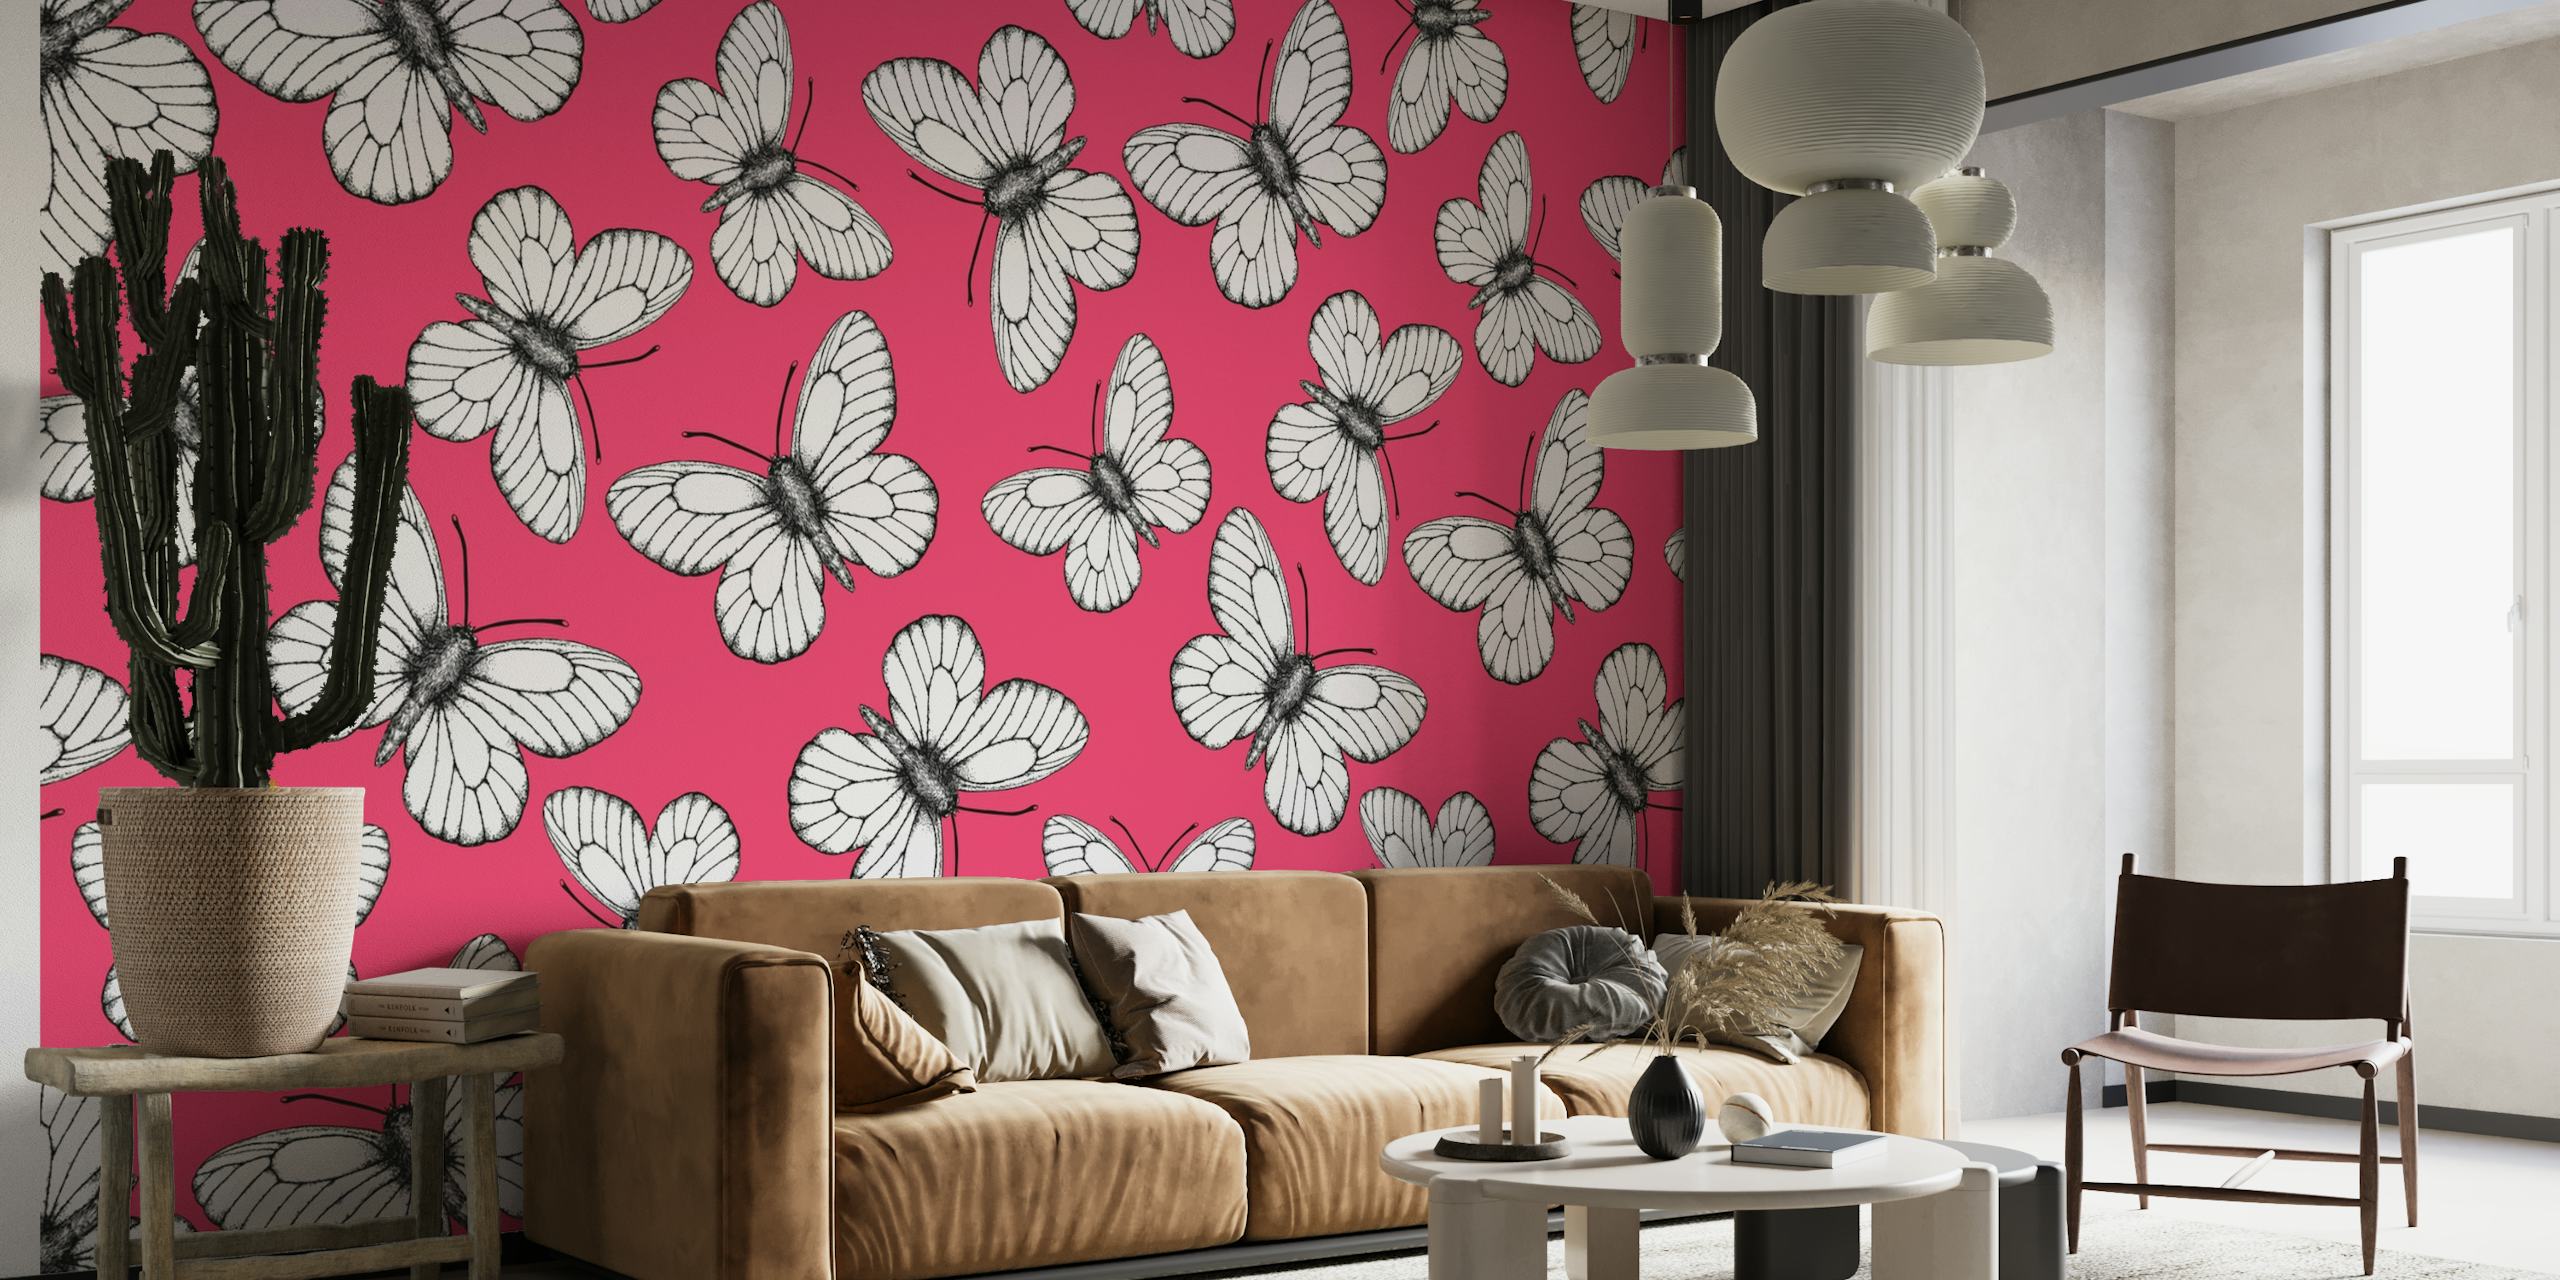 Wit vlinderpatroon op roze muurschildering als achtergrond